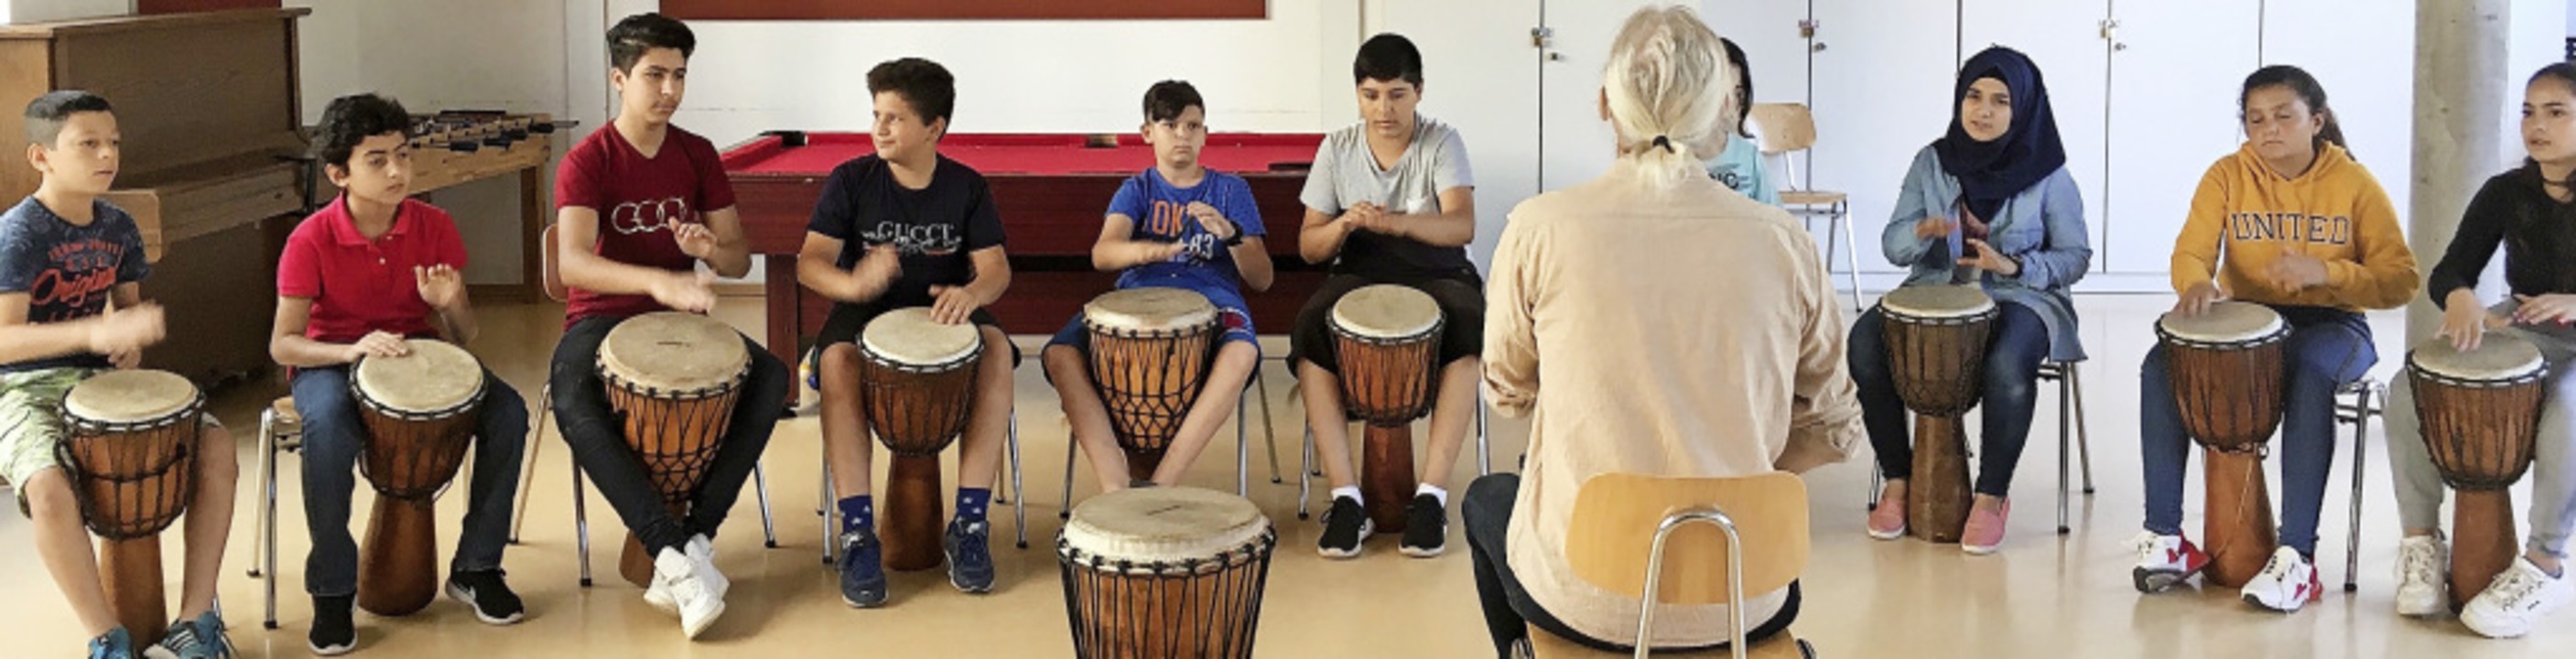 Trommelprojekt an der Kastelbergschule...14-Jährige mit Migrationshintergrund.   | Foto: Kastelbergschule